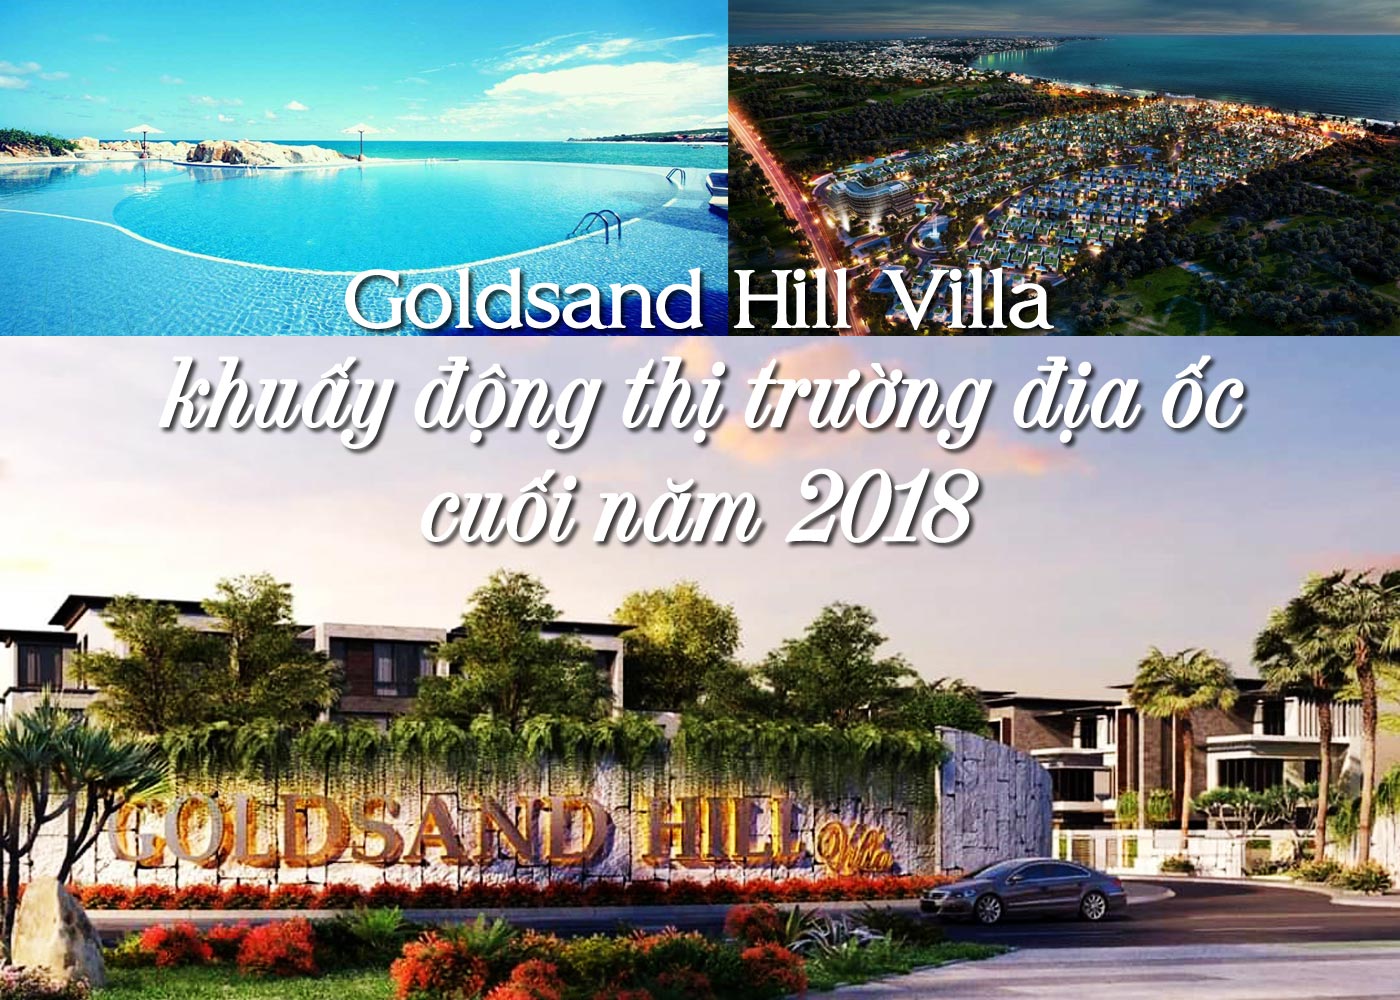 Goldsand Hill Villa khuấy động thị trường địa ốc cuối năm 2018 - Ảnh 1